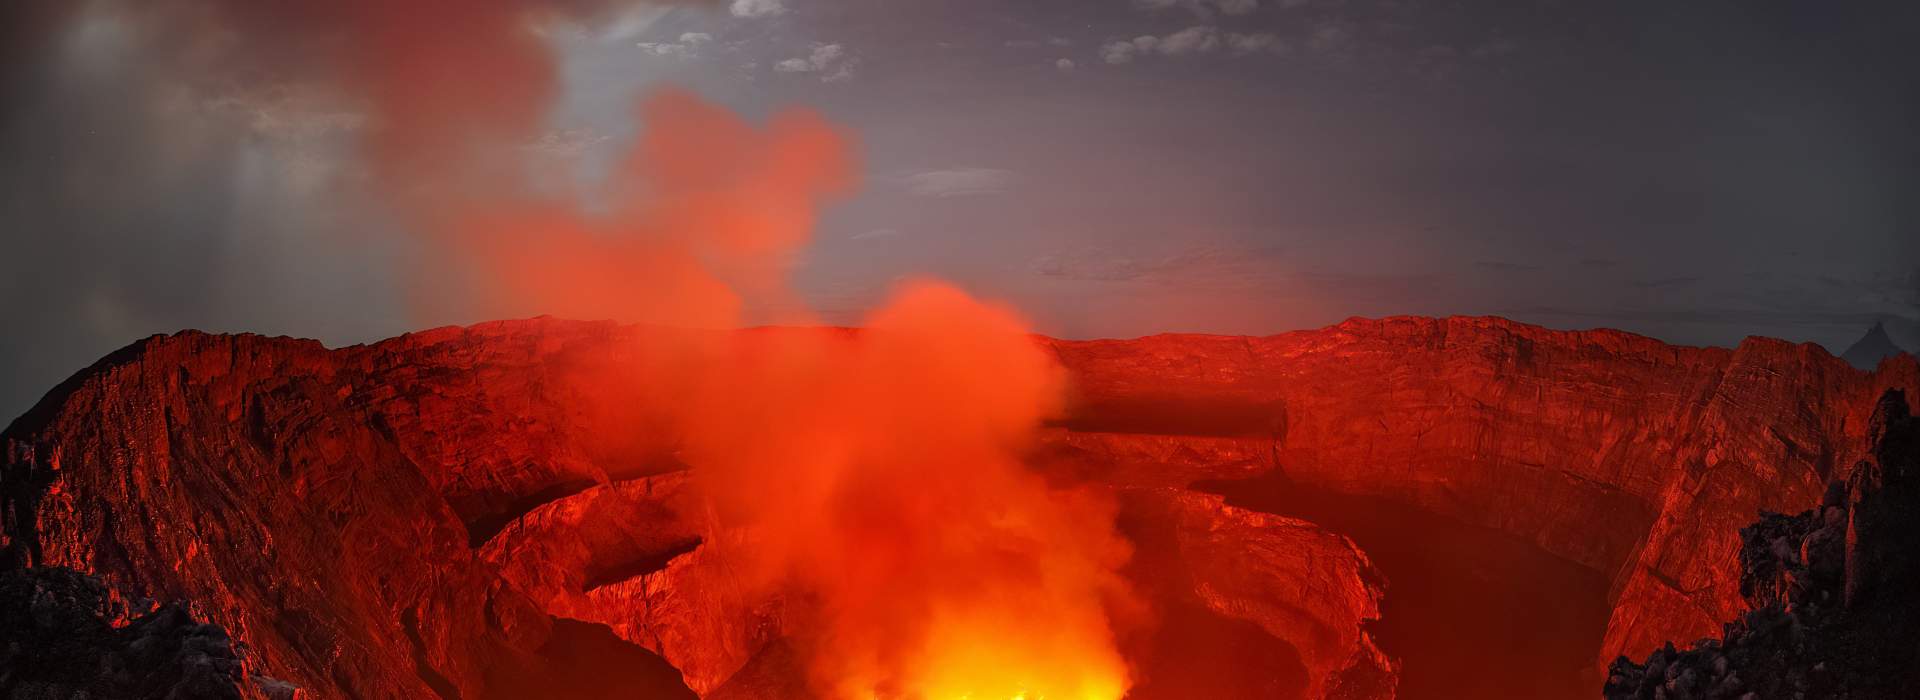 Rauchender Vulkan mit Magma